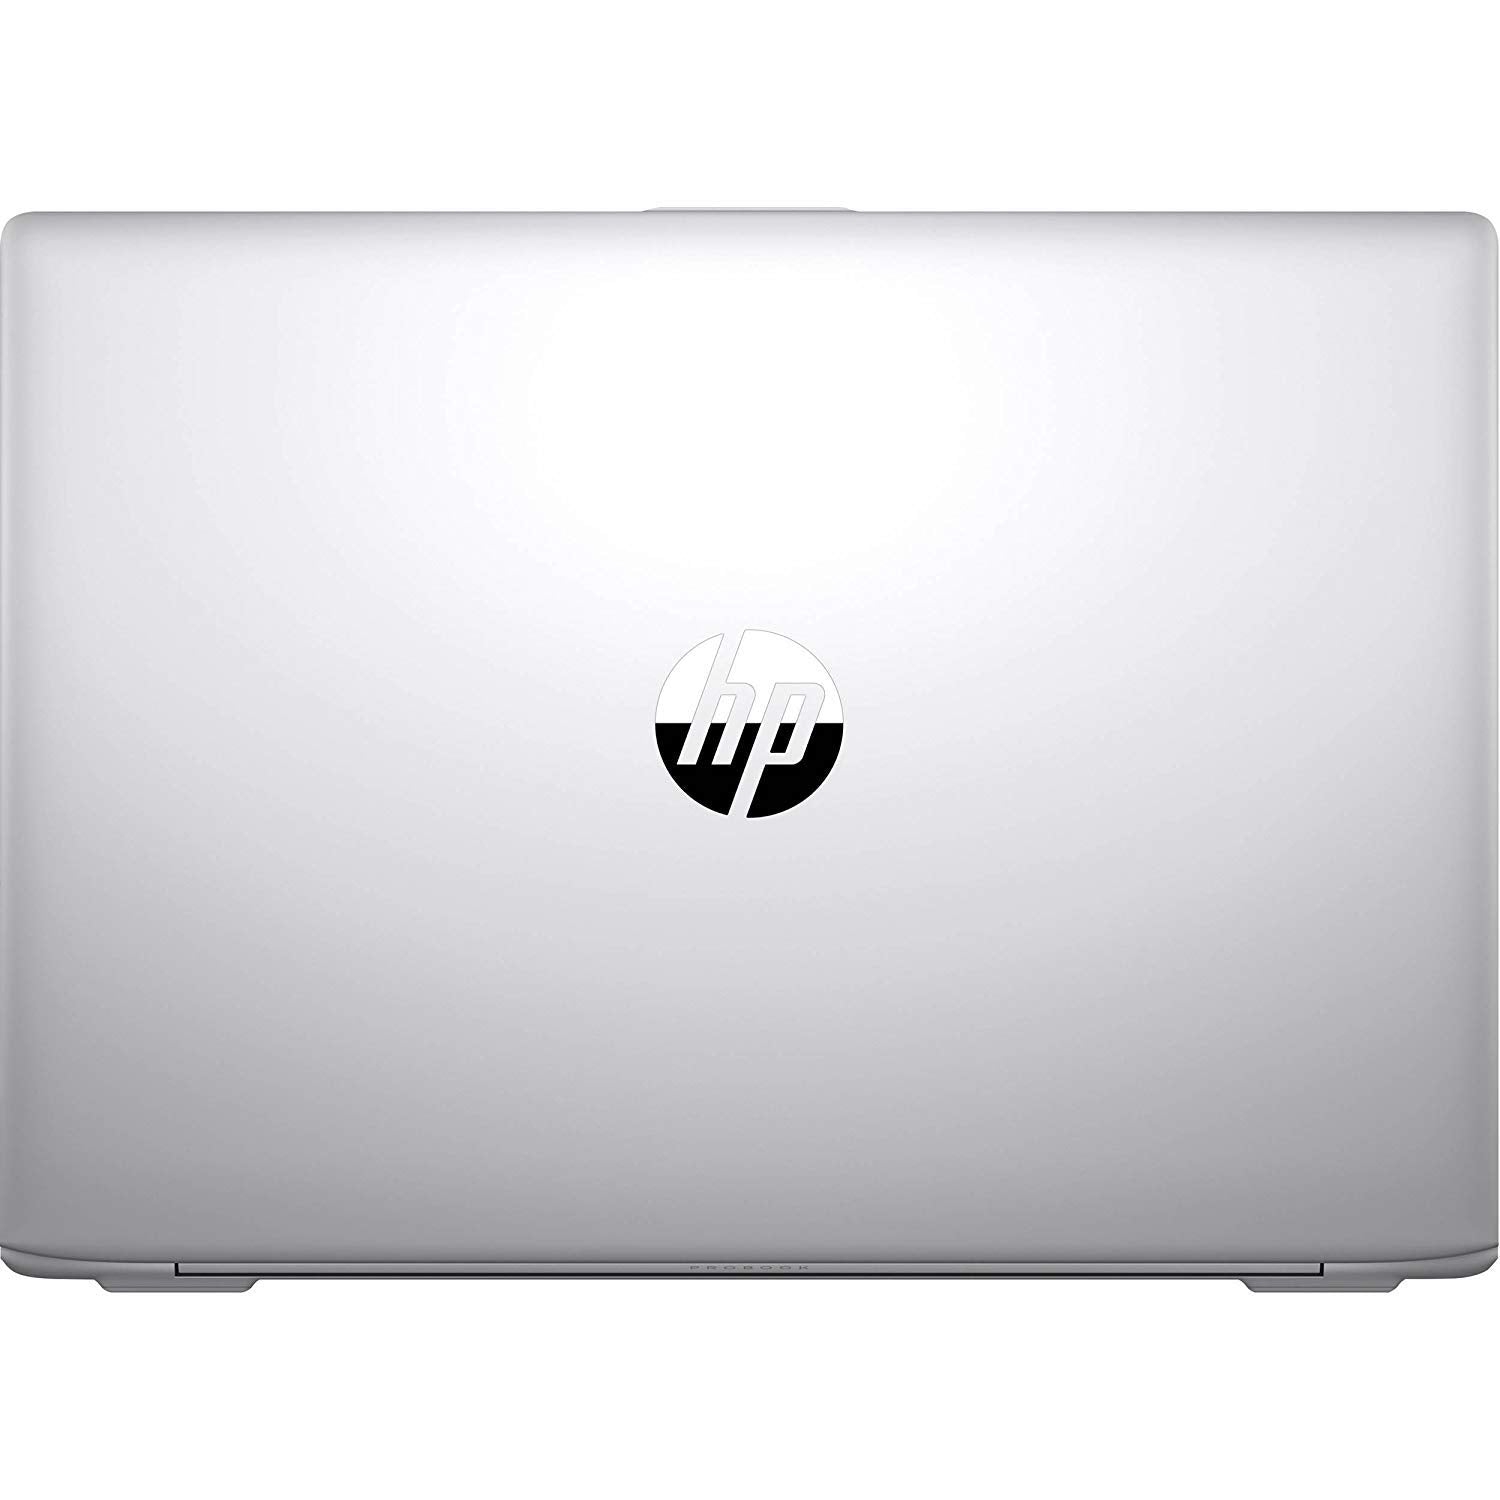 HP ProBook 440 G5 Laptop Intel i5-8250U, 8GB RAM, 256GB SSD, 15.6-in FHD 1920x1080, Win10 Pro